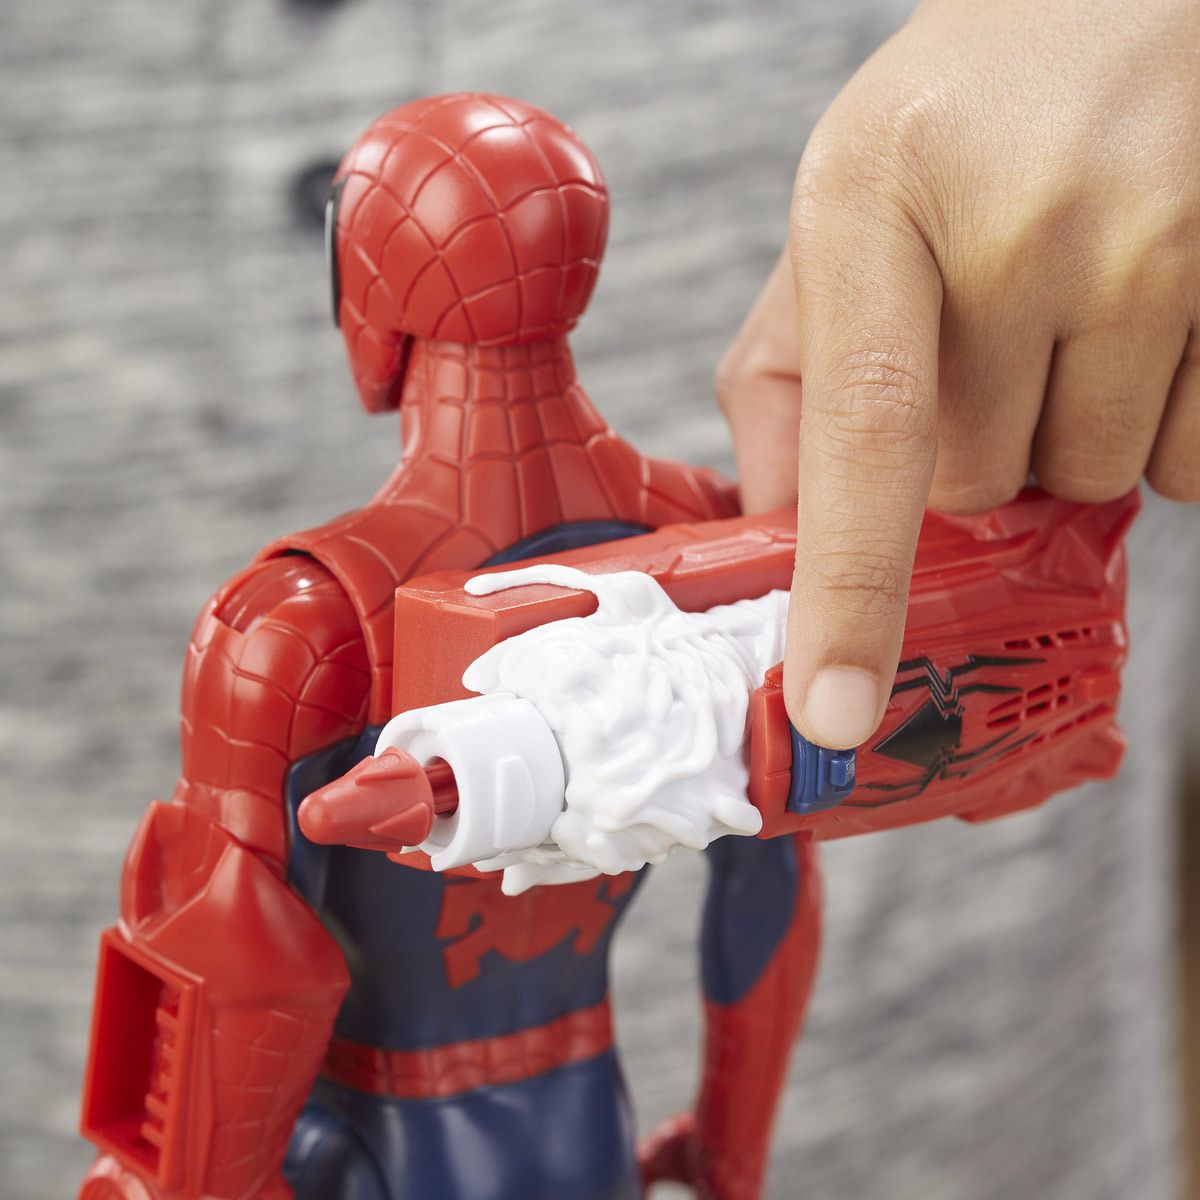 figurine titan power pack spider man